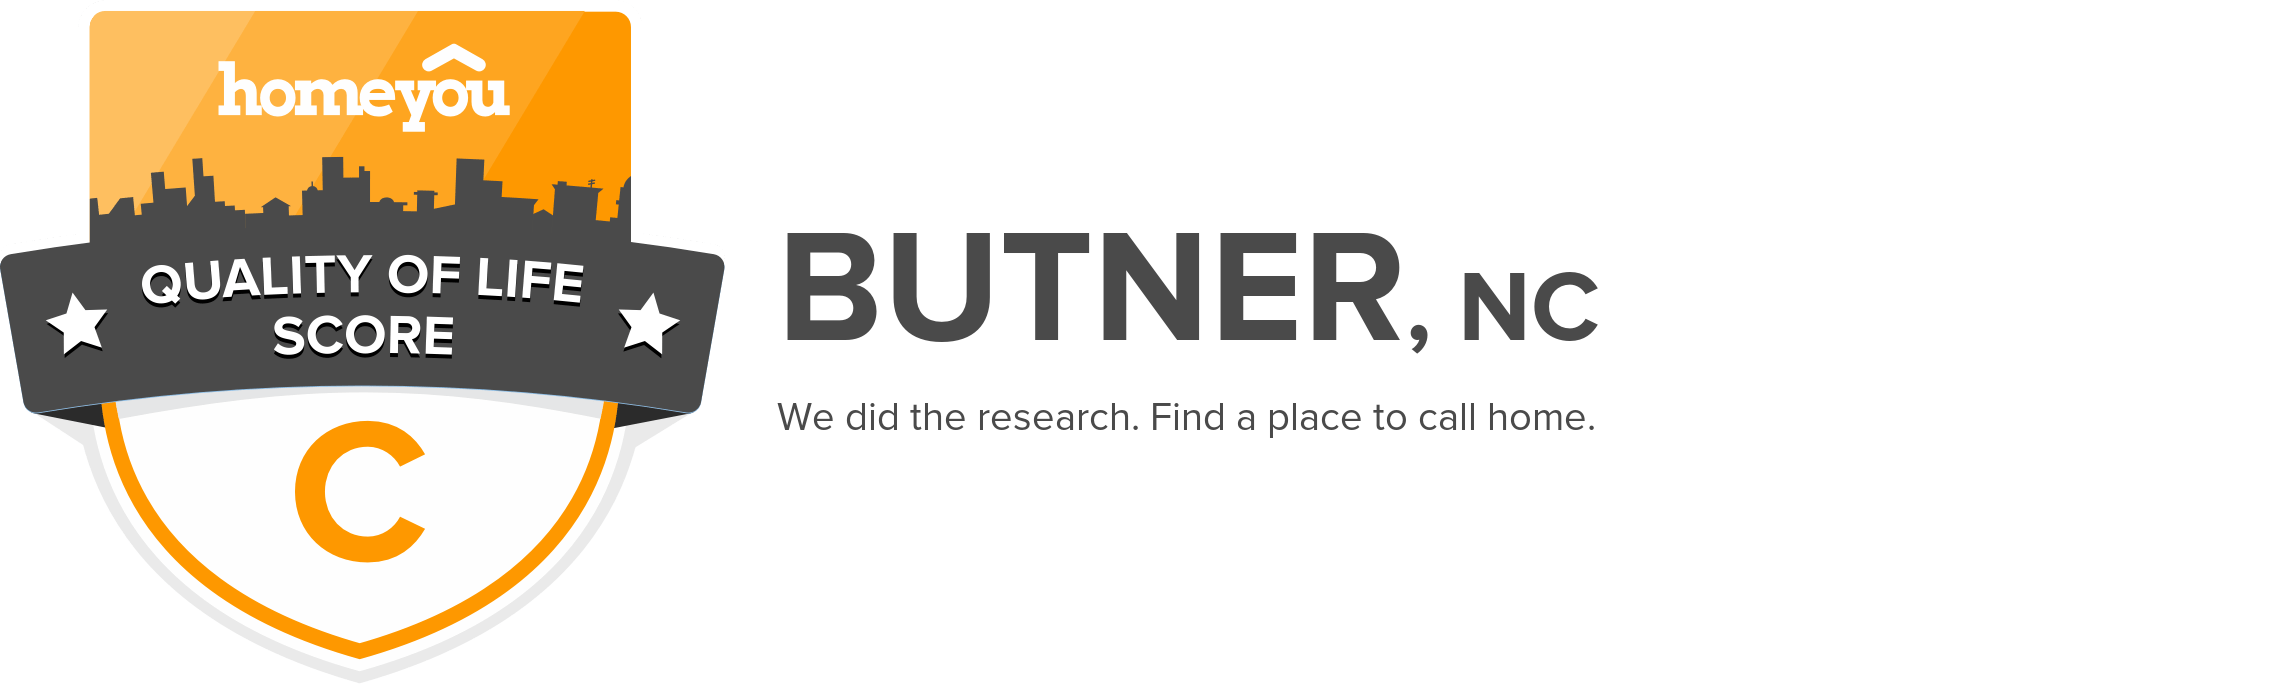 Butner, NC